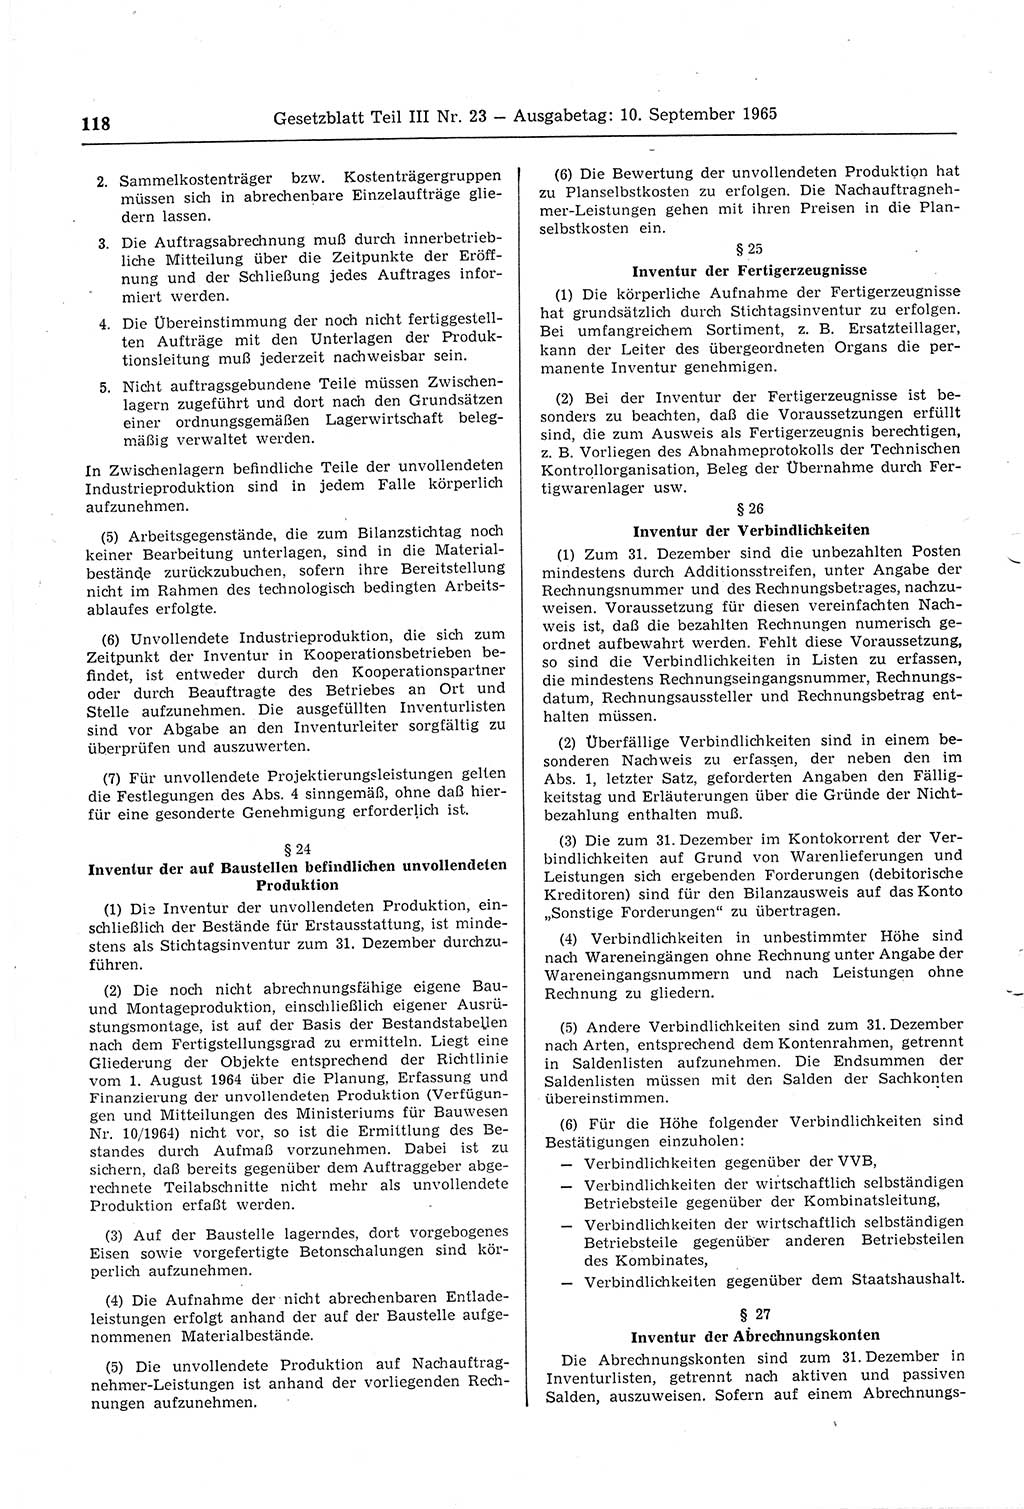 Gesetzblatt (GBl.) der Deutschen Demokratischen Republik (DDR) Teil ⅠⅠⅠ 1965, Seite 118 (GBl. DDR ⅠⅠⅠ 1965, S. 118)